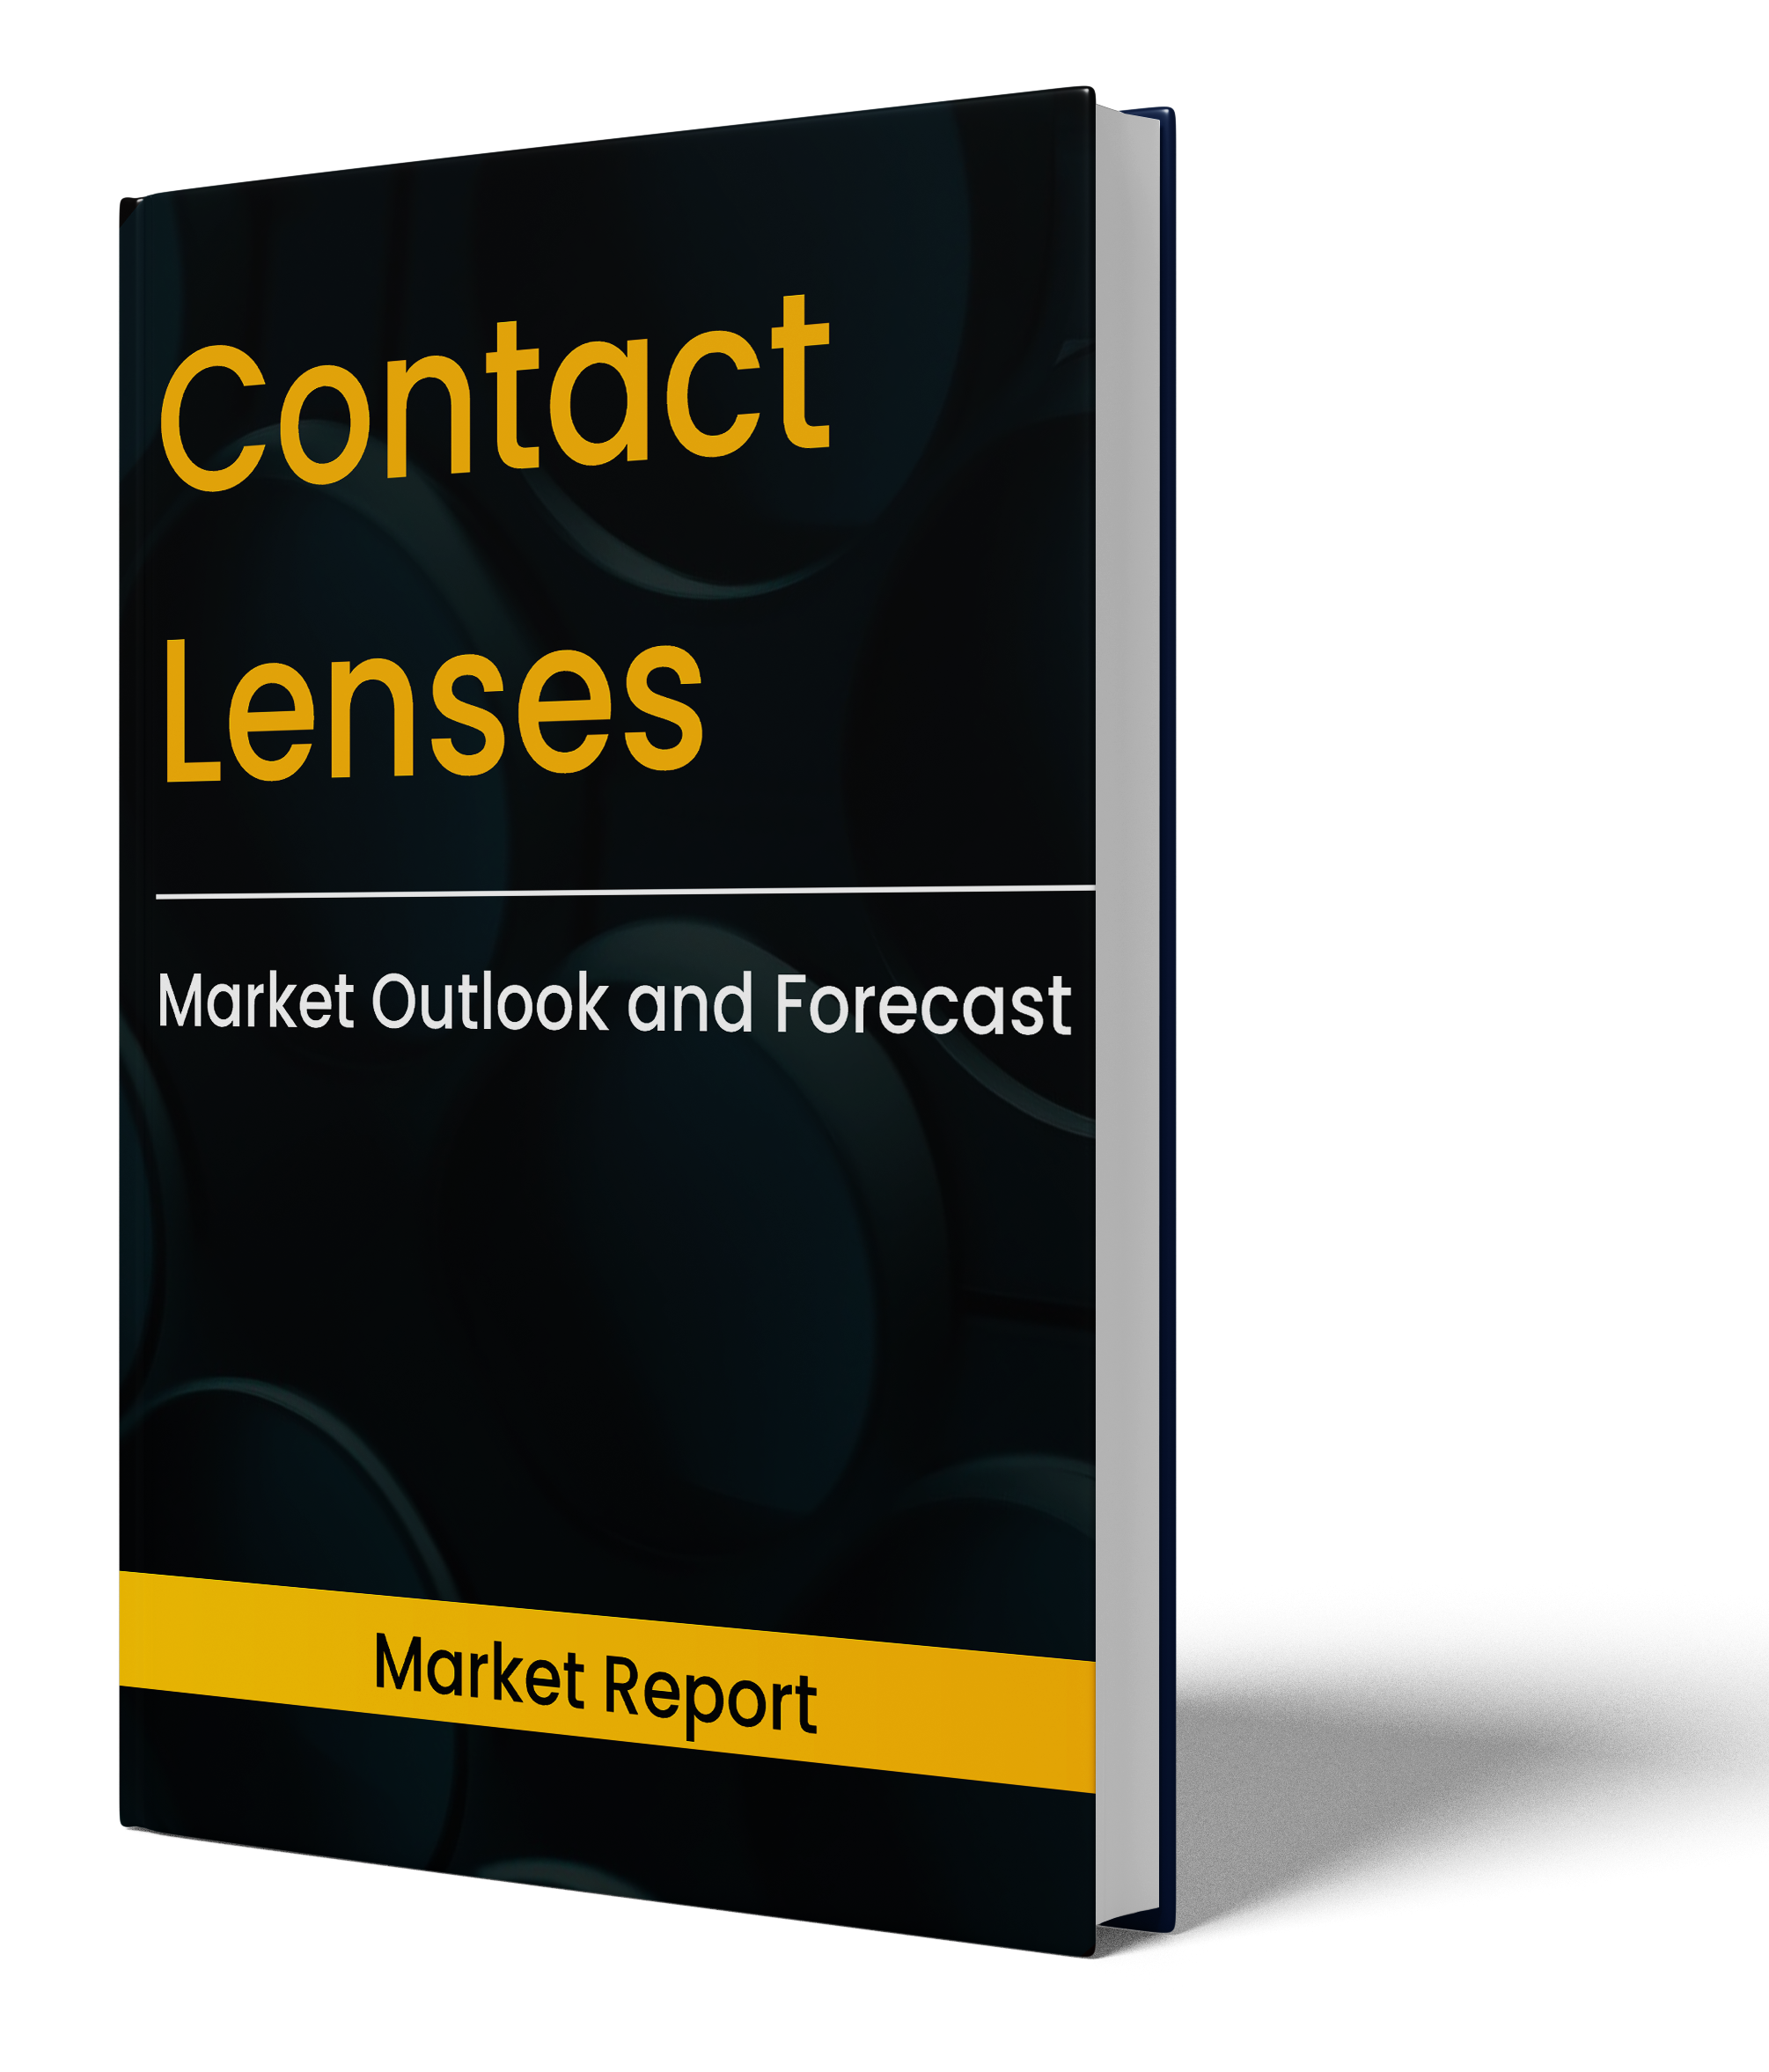 Contact Lenses Market Report